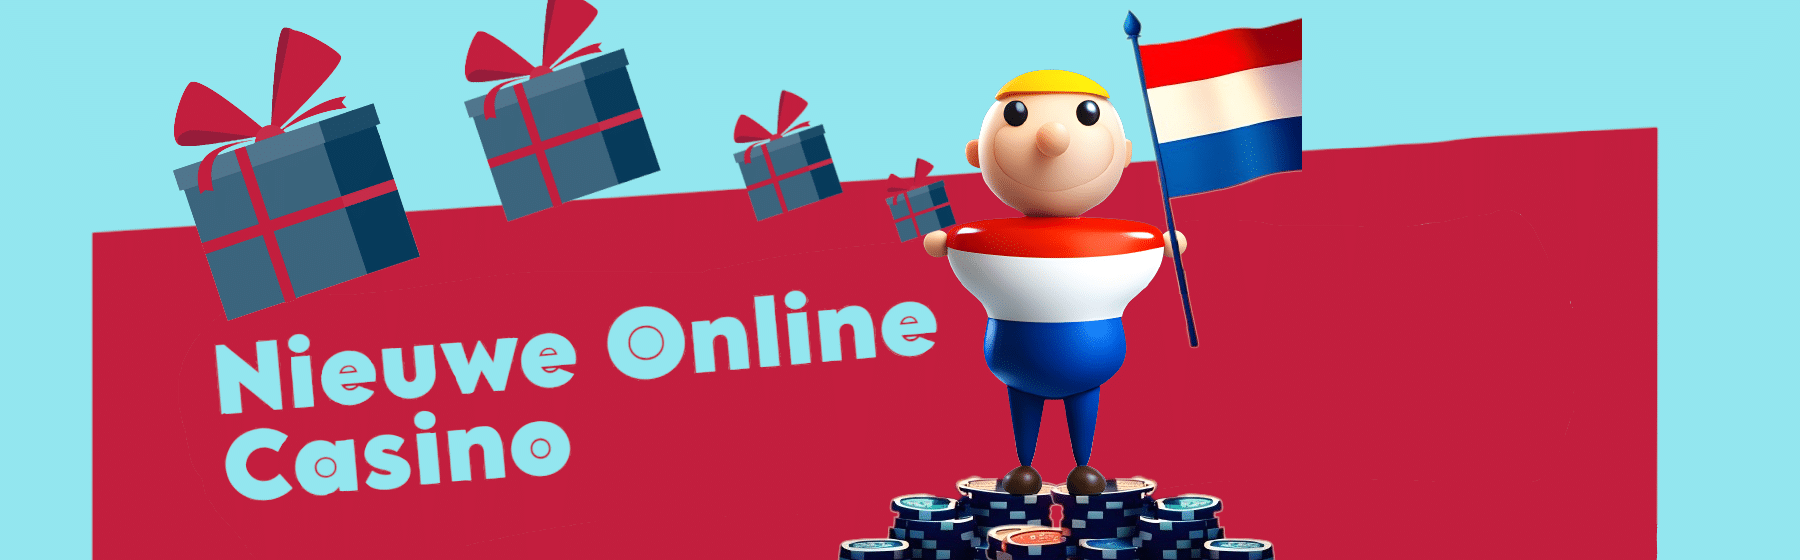 man in een nederlands shirt, staand op casinofiches met een nederlandse vlag in de hand